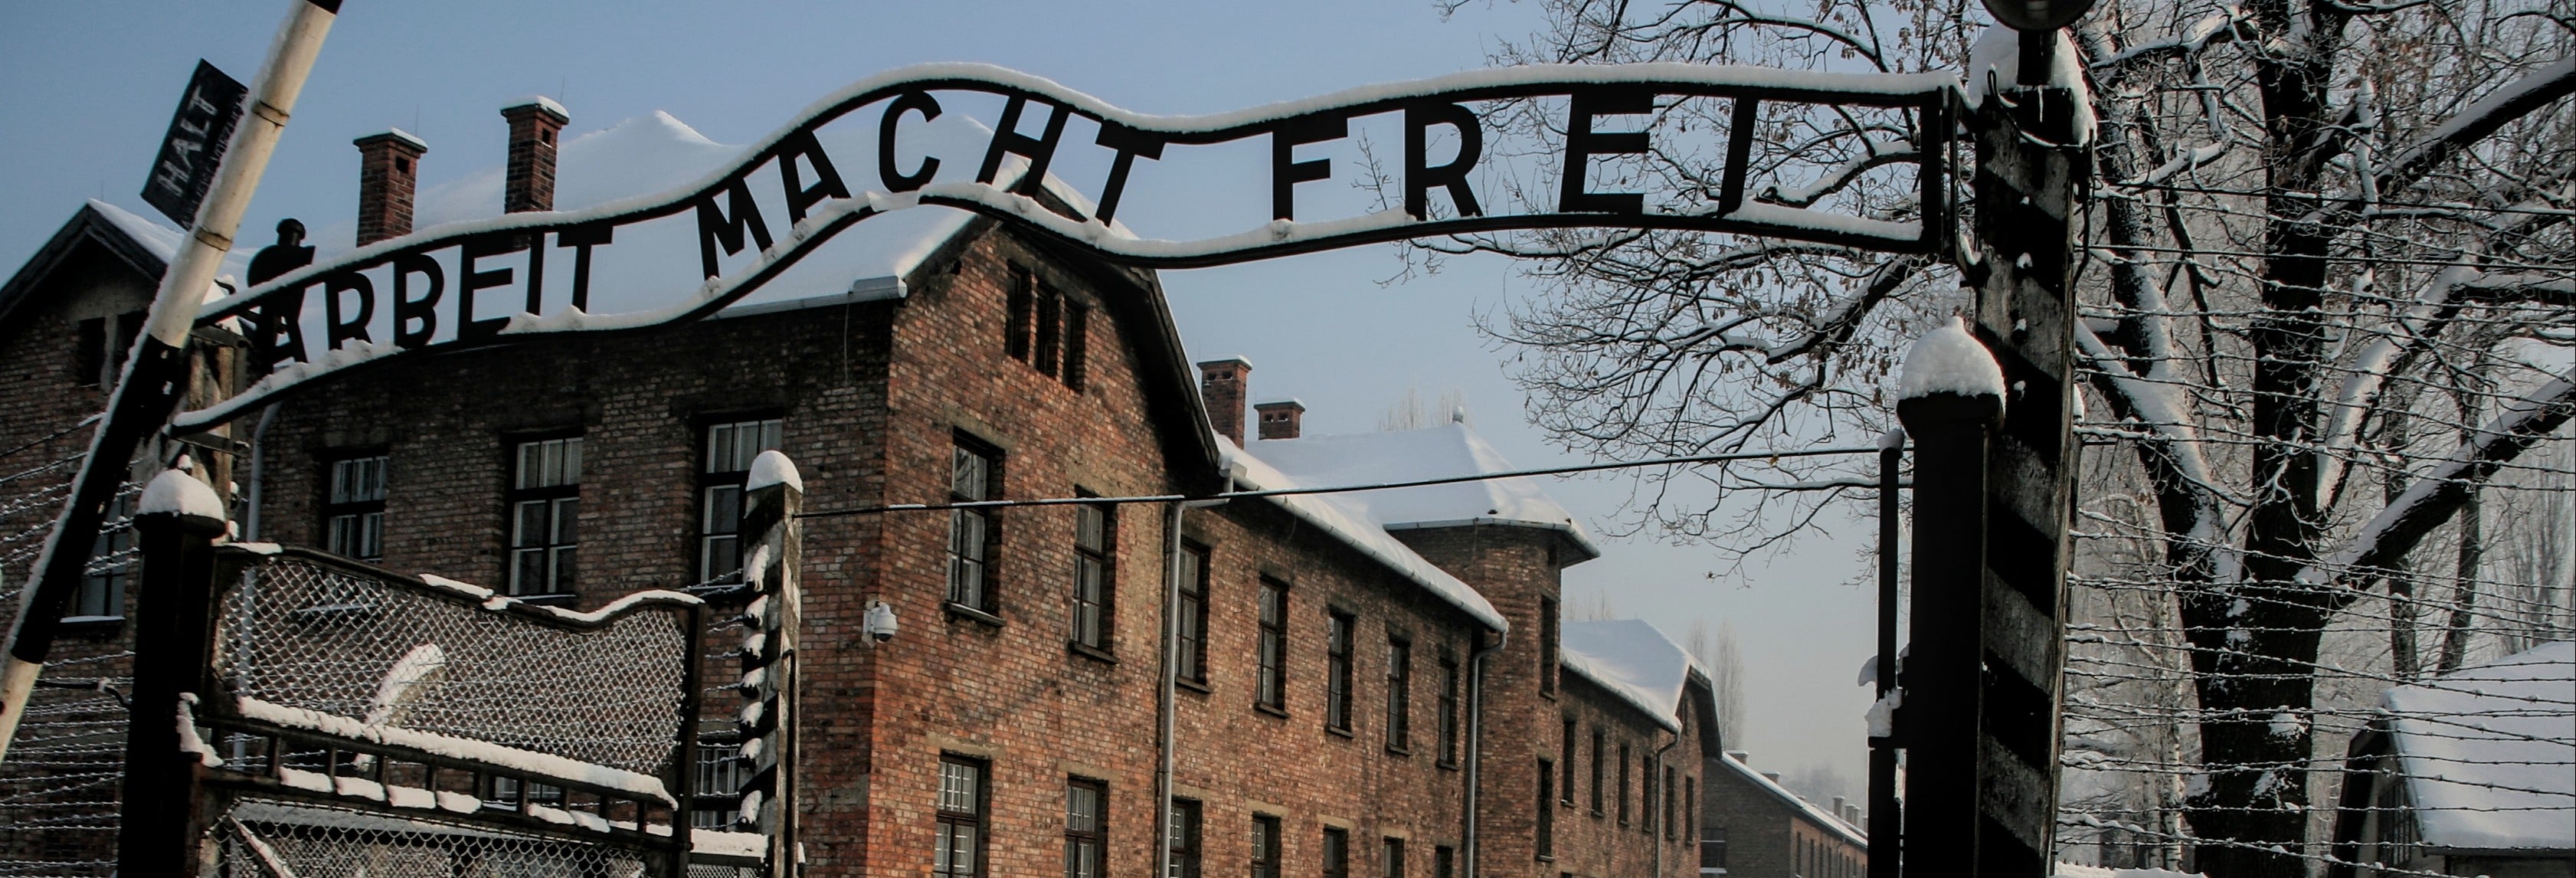 Oferta: Auschwitz + Minas de Sal em um dia